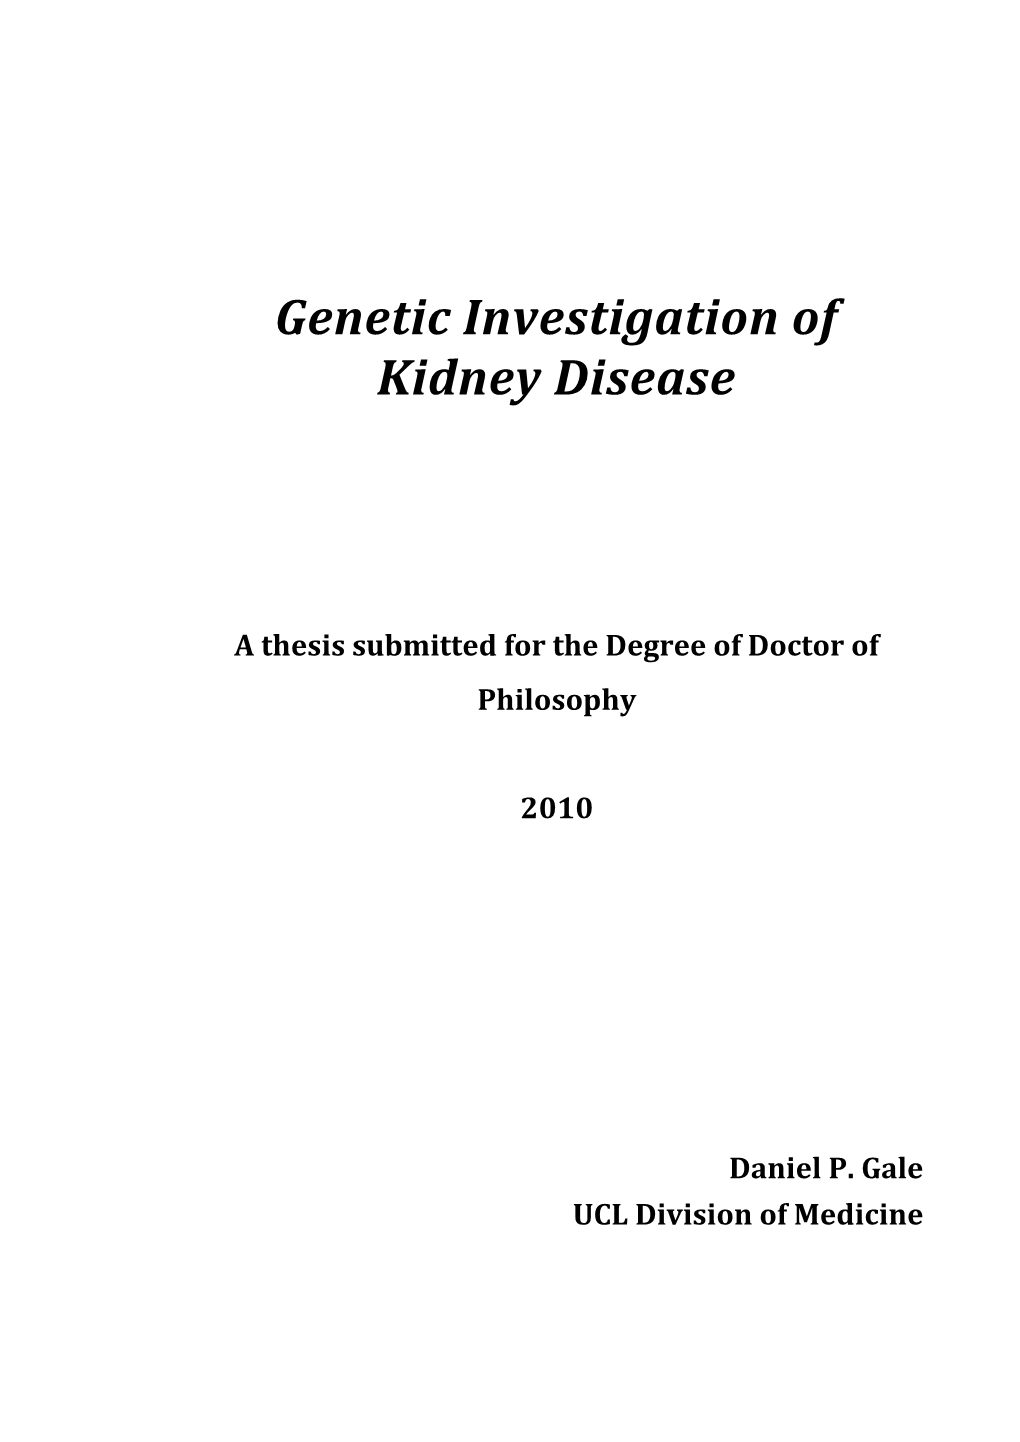 Genetic Investigation of Kidney Disease